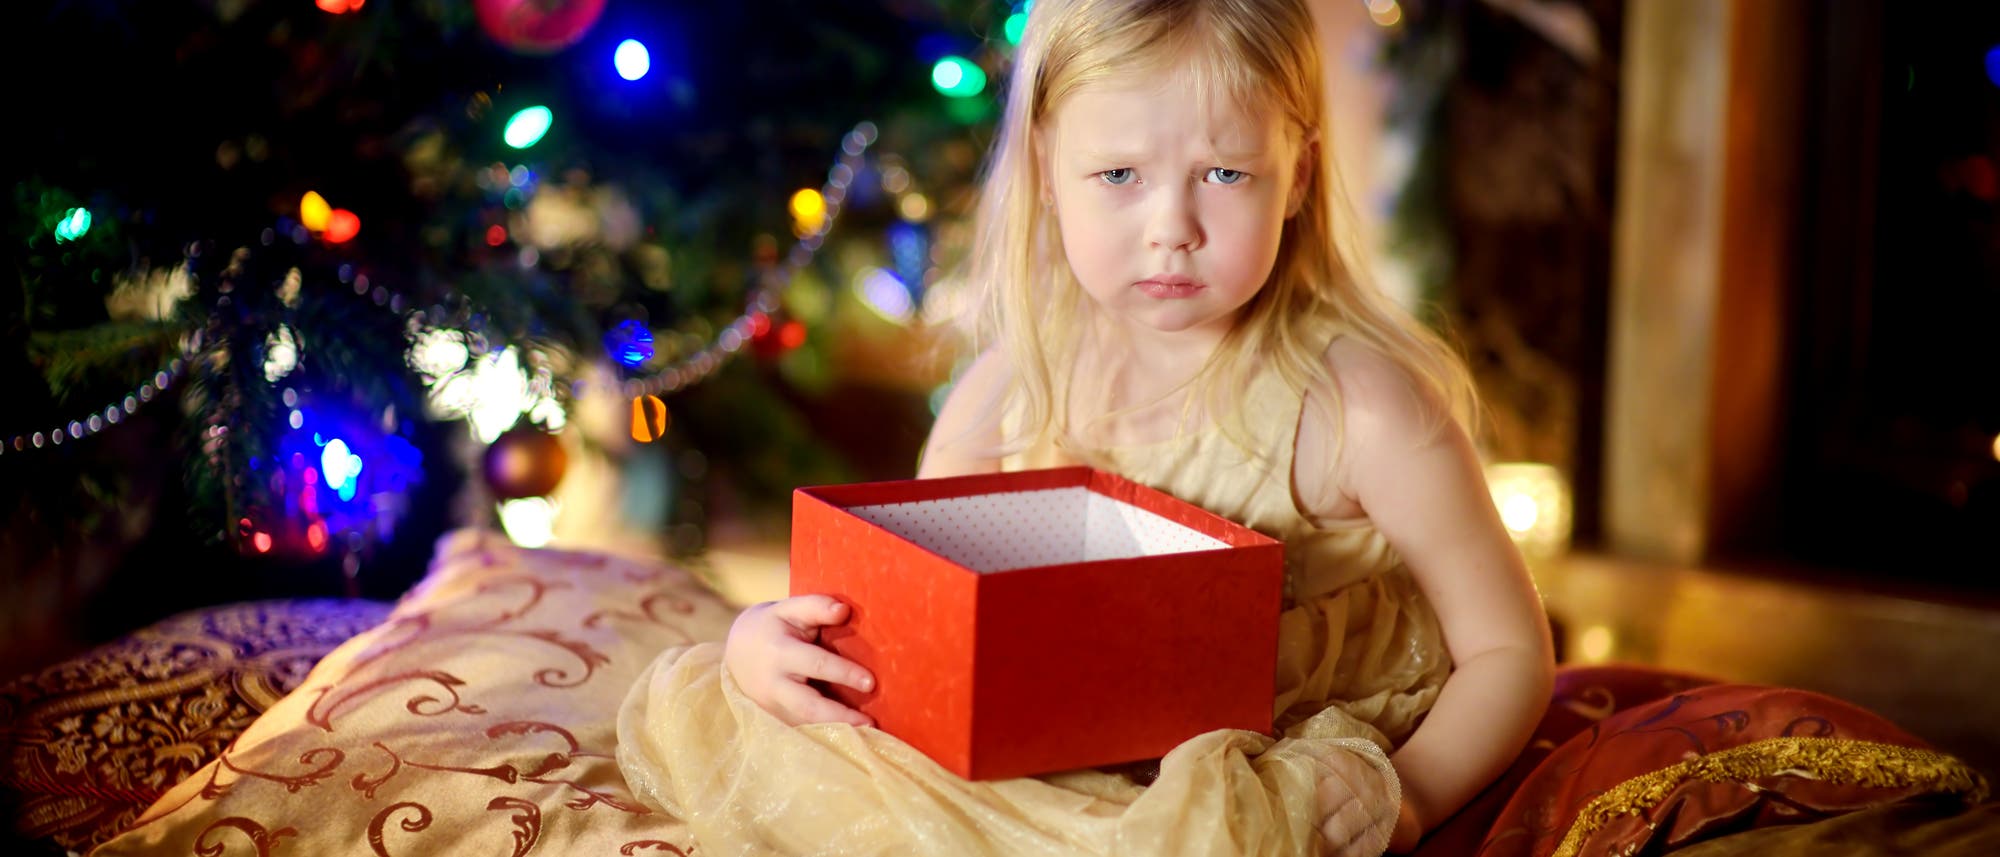 Warum packen wir Weihnachts-Geschenke eigentlich ein? Wundervolles